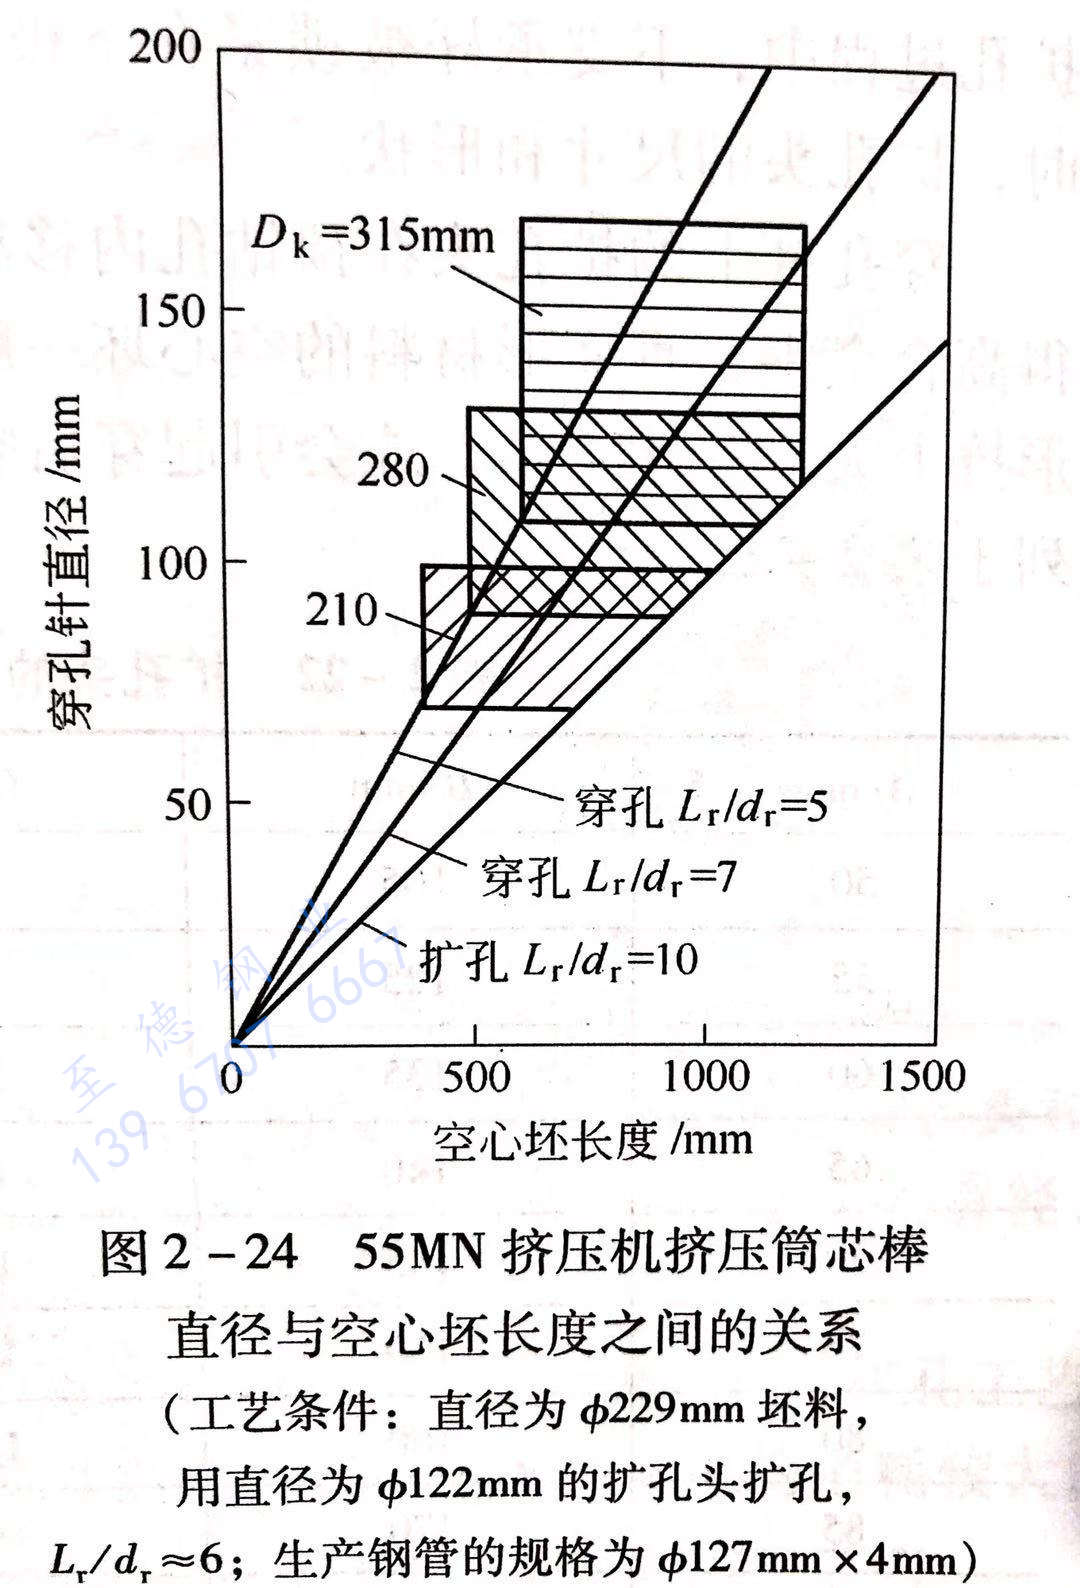 图 2-24 55MN挤压机挤压筒芯棒直径与空心坯长度之间的关系.jpg